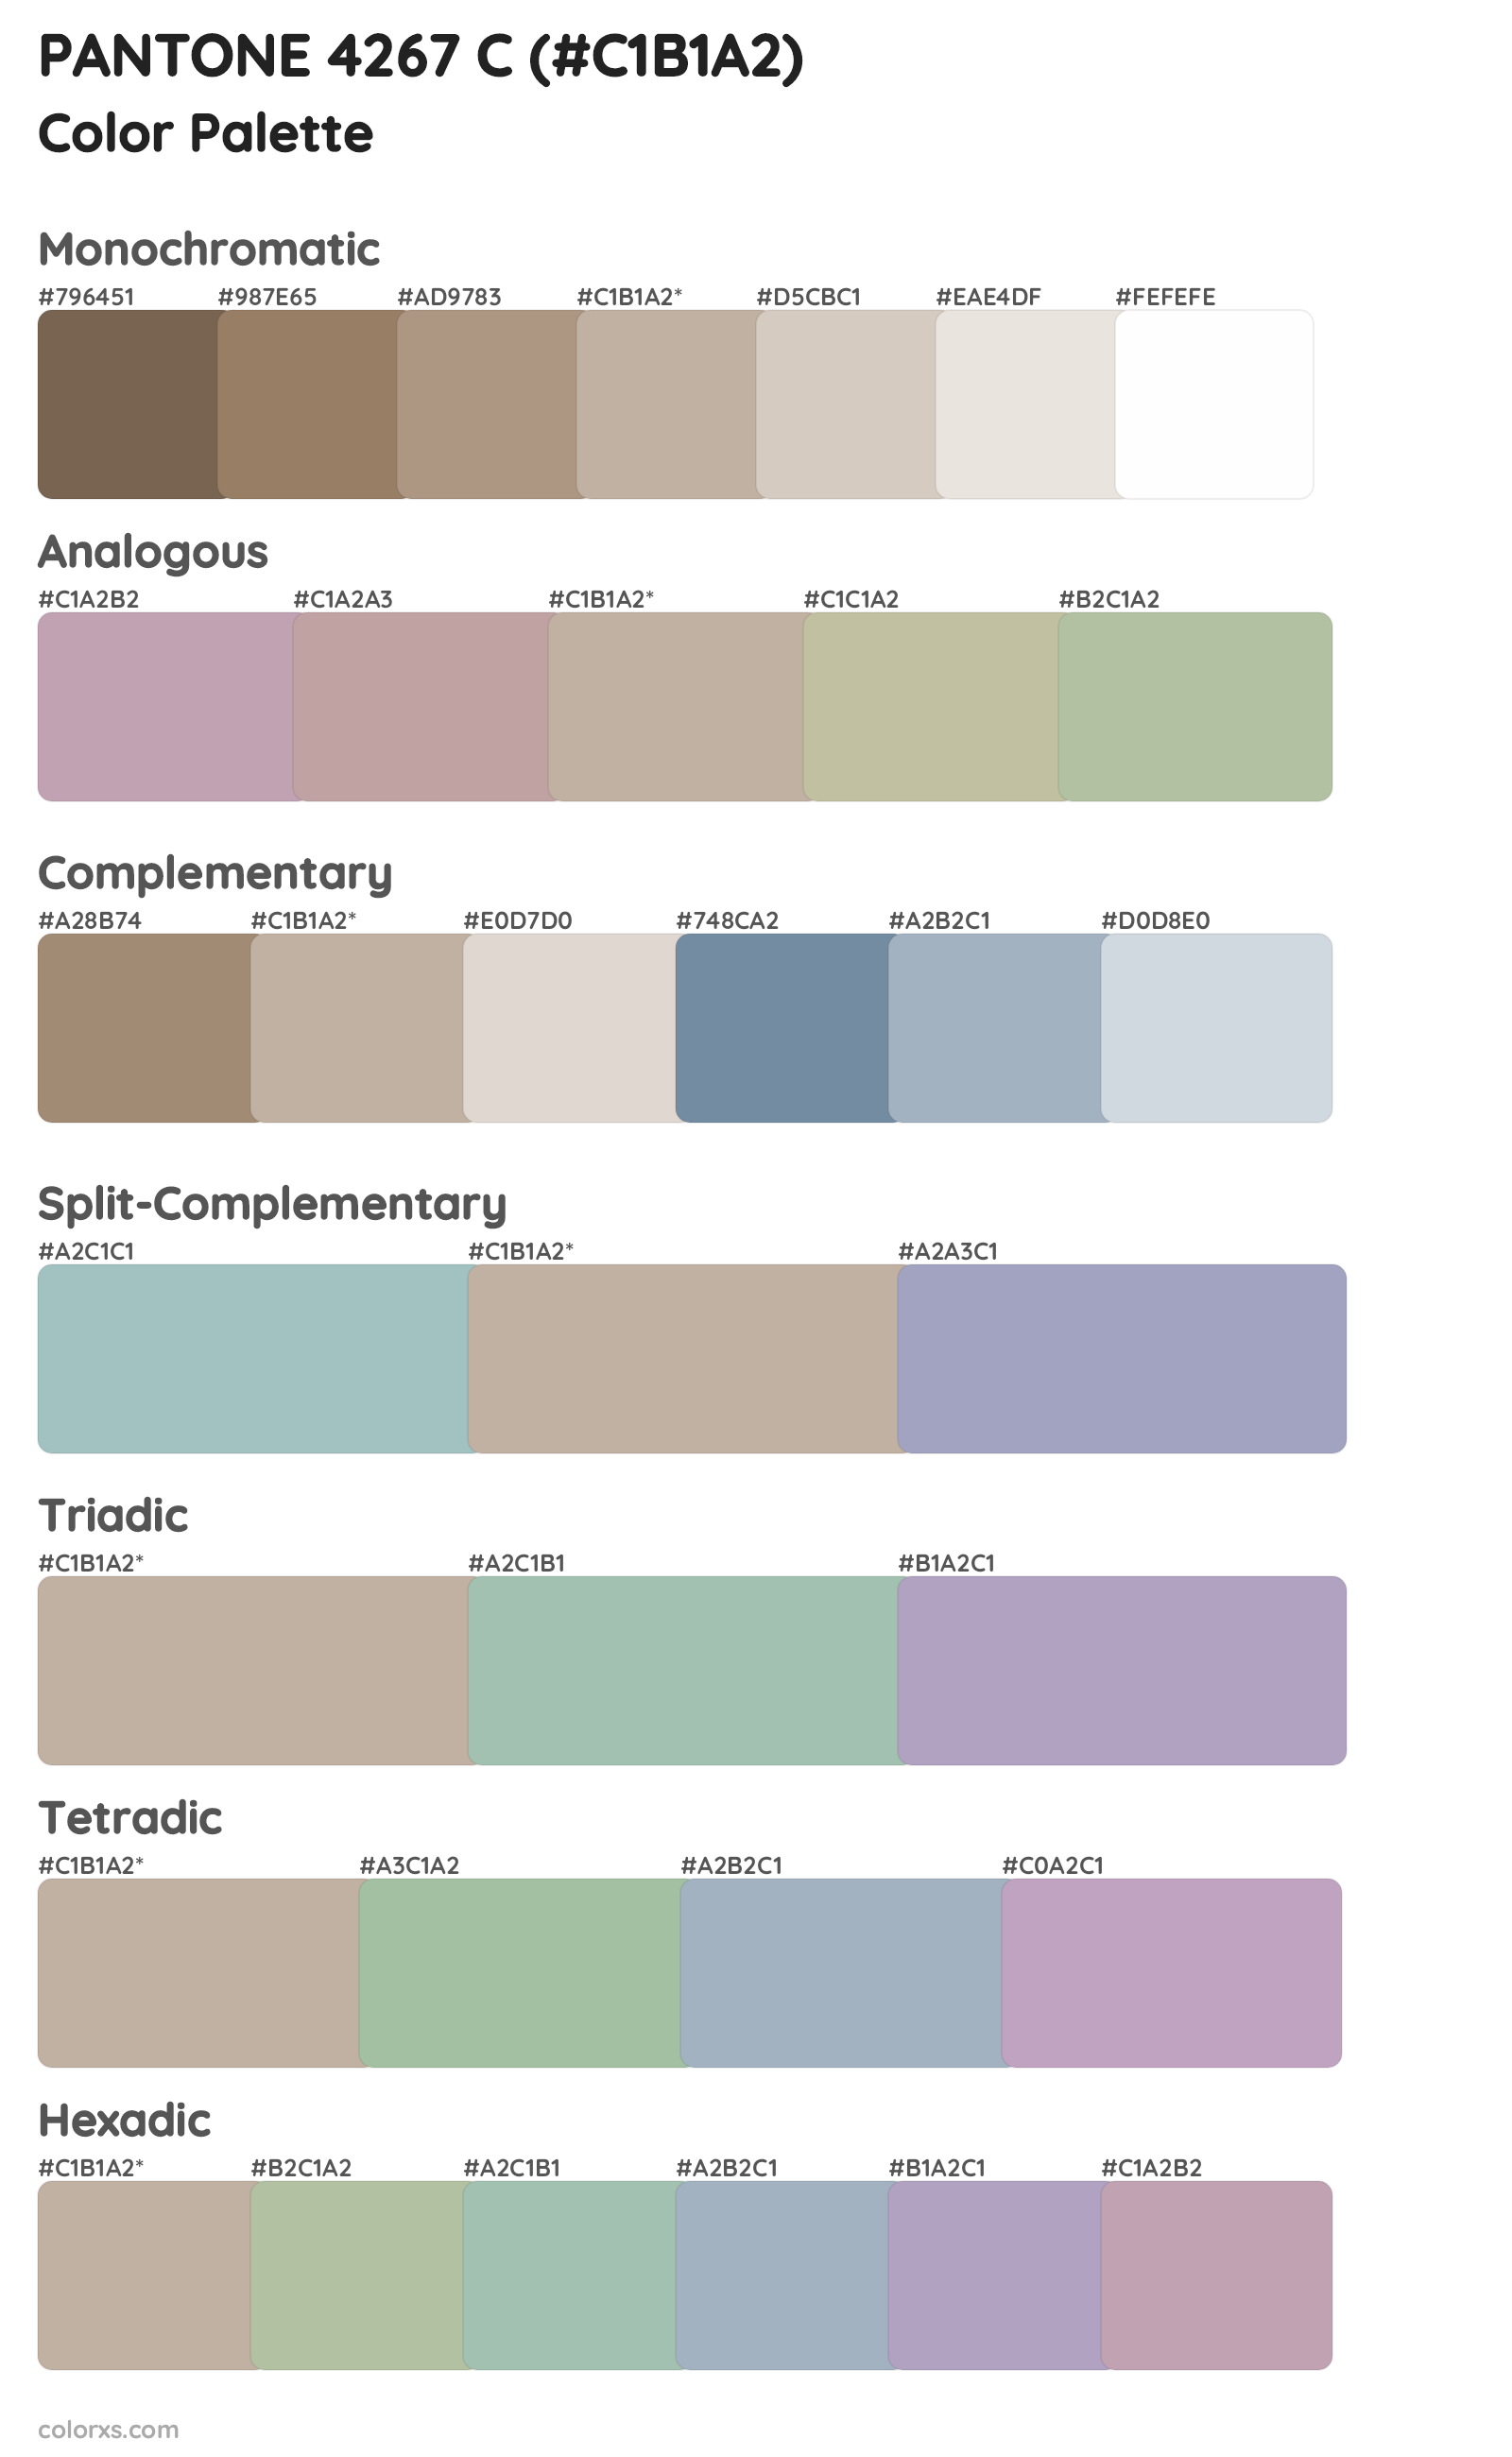 PANTONE 4267 C Color Scheme Palettes